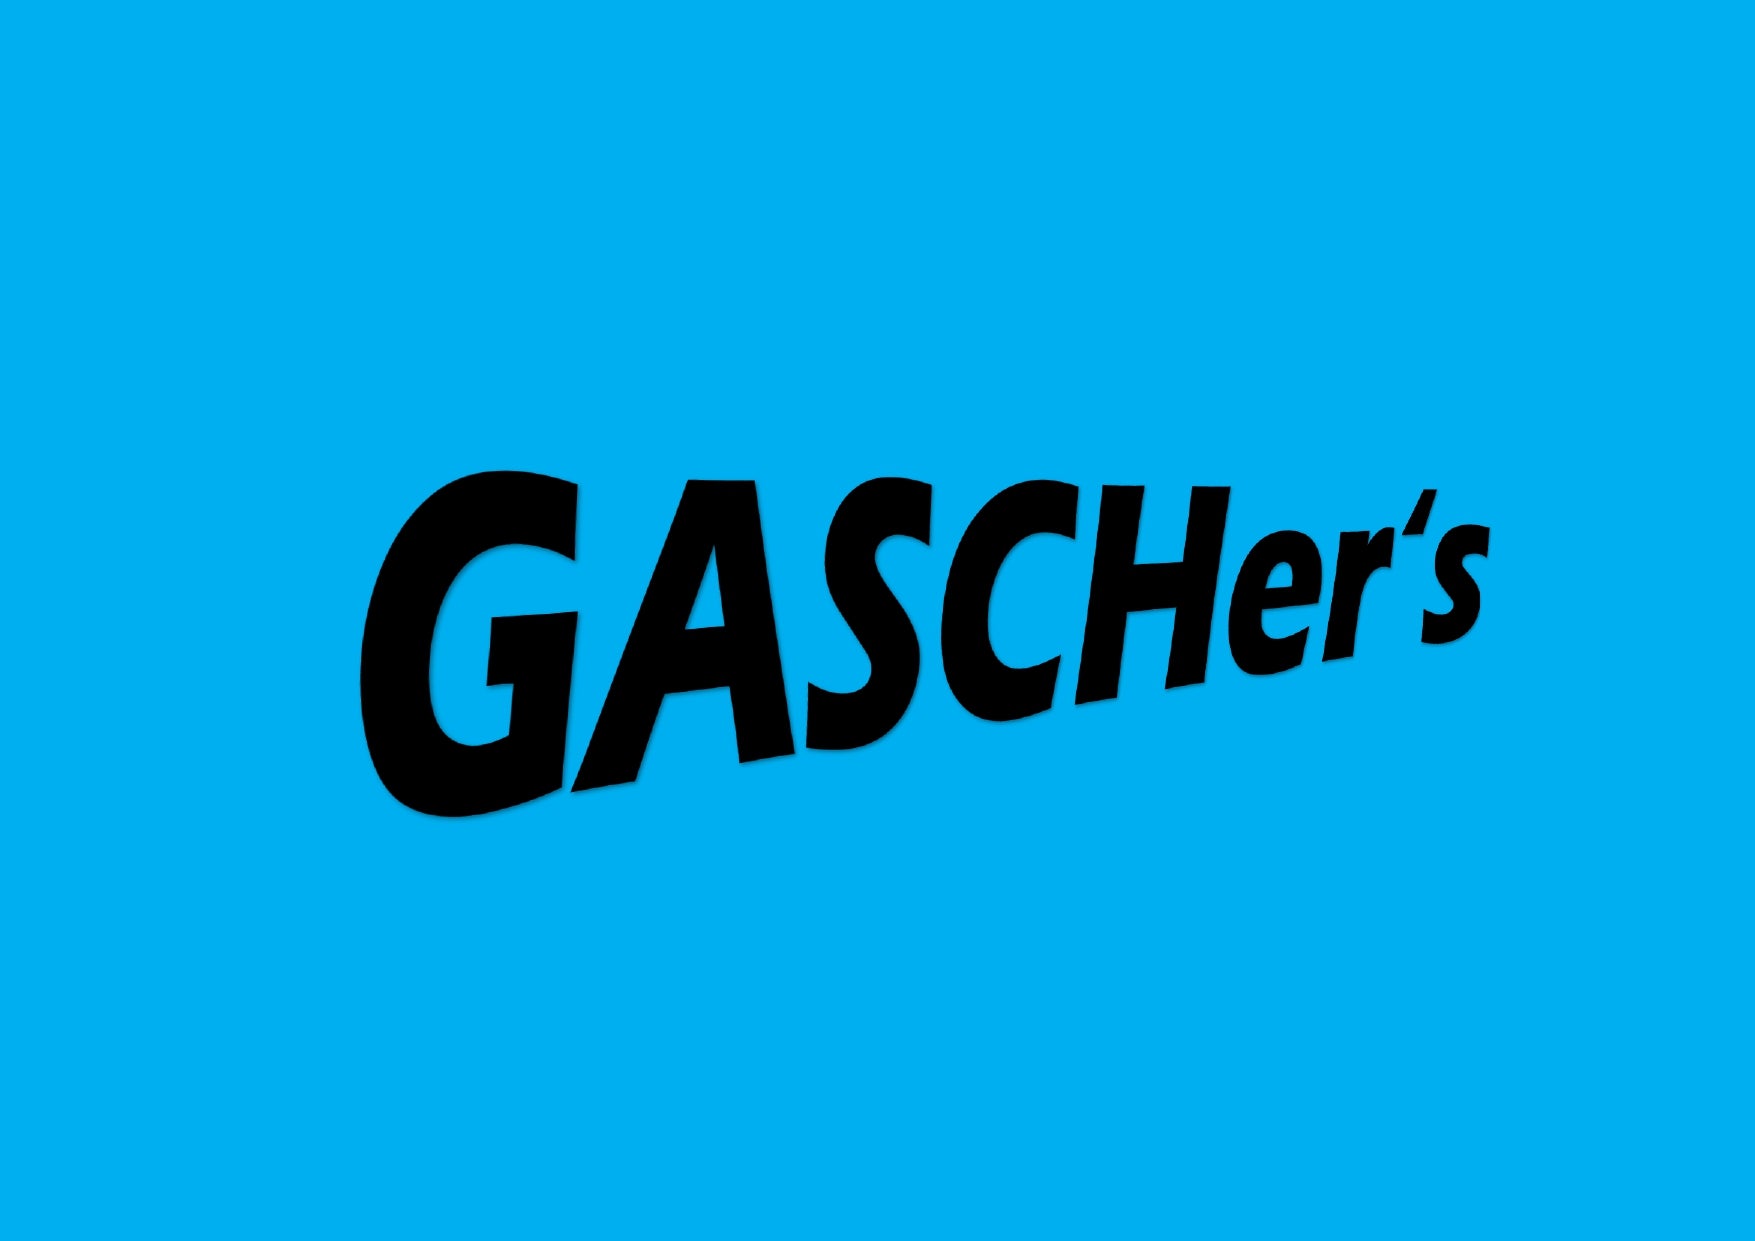 GASCHer's Onlineshop seit über 20 Jahren 